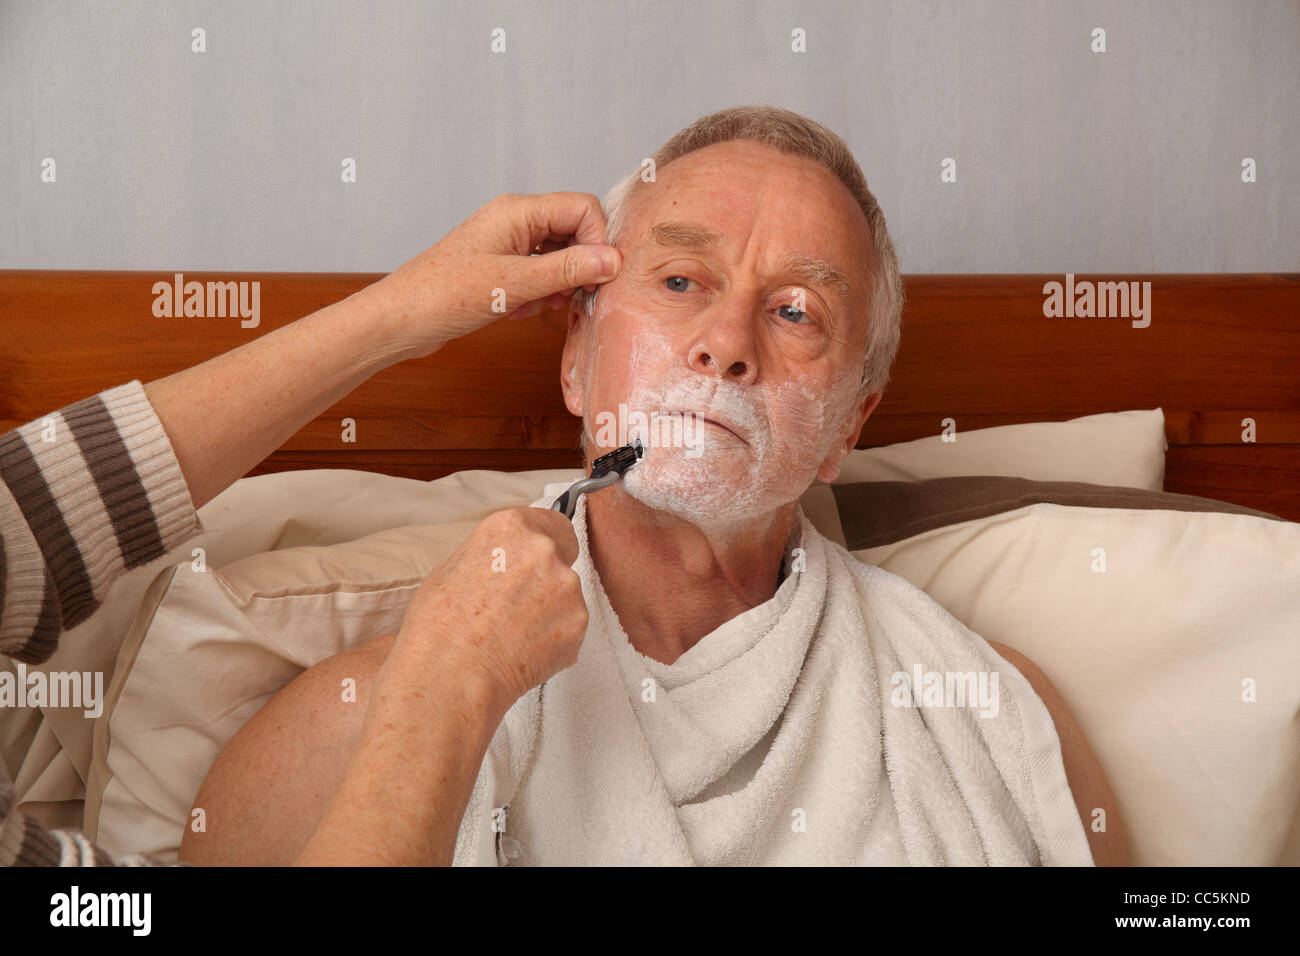 Un bedbound l uomo nella sua 60's rasata da sua moglie/accompagnatori Foto Stock